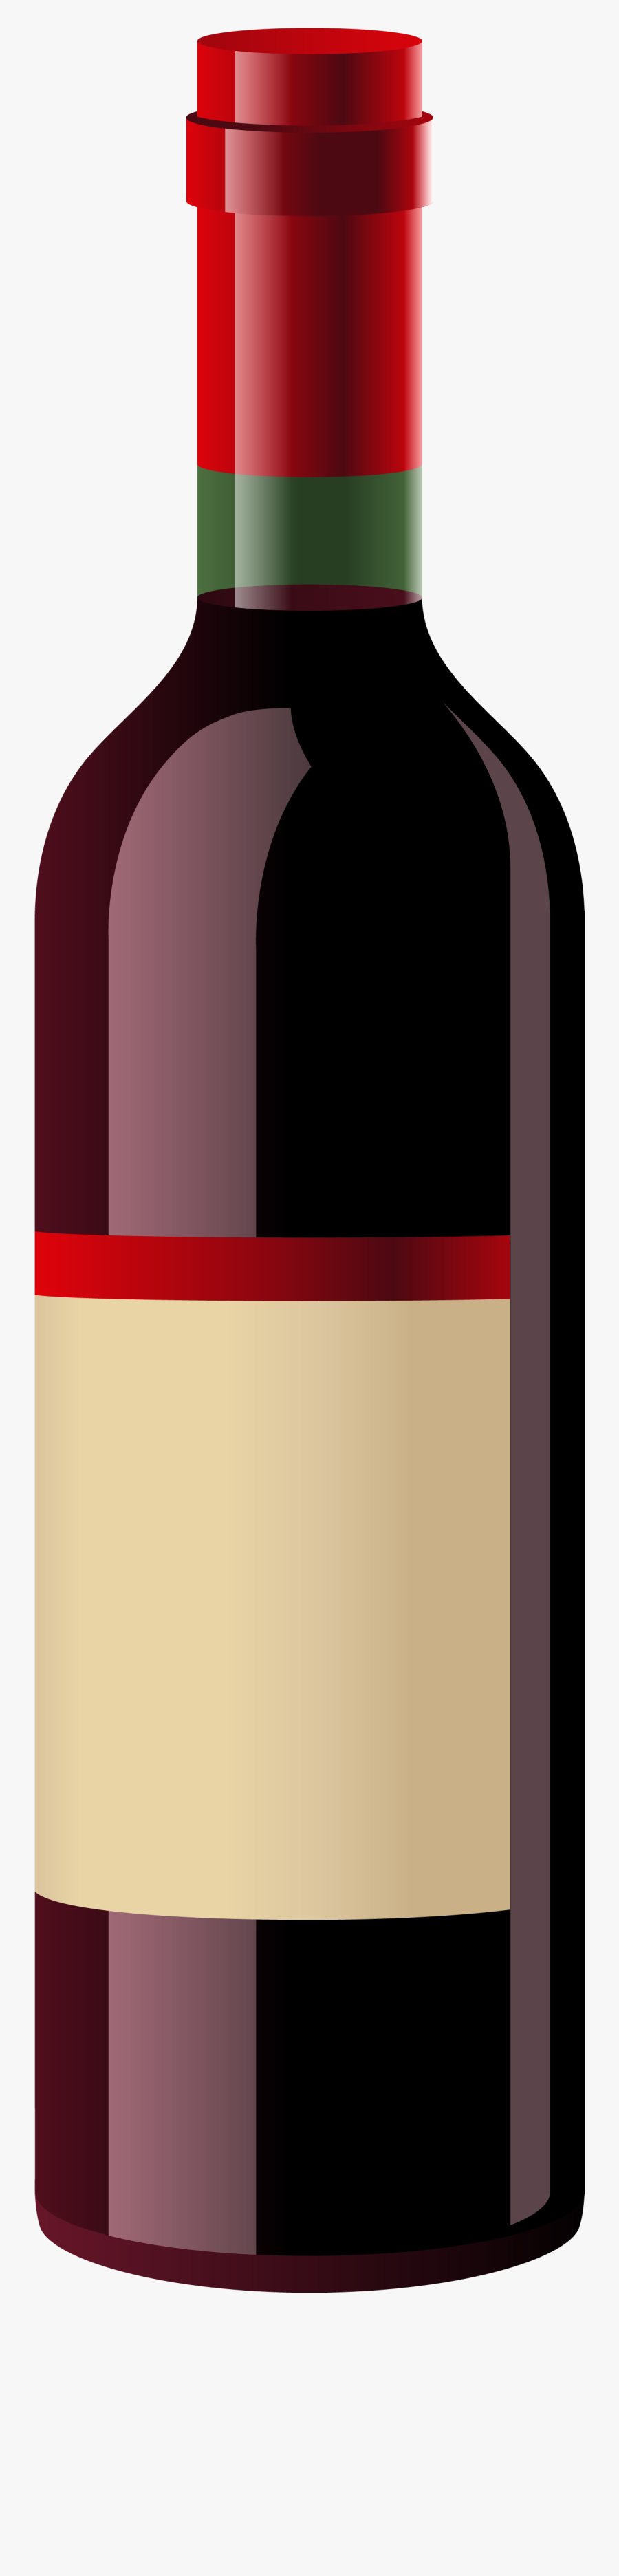 Wine Bottle Clipart, Explore Pictures - Cartoon Pictures Of Wine Bottles, Transparent Clipart